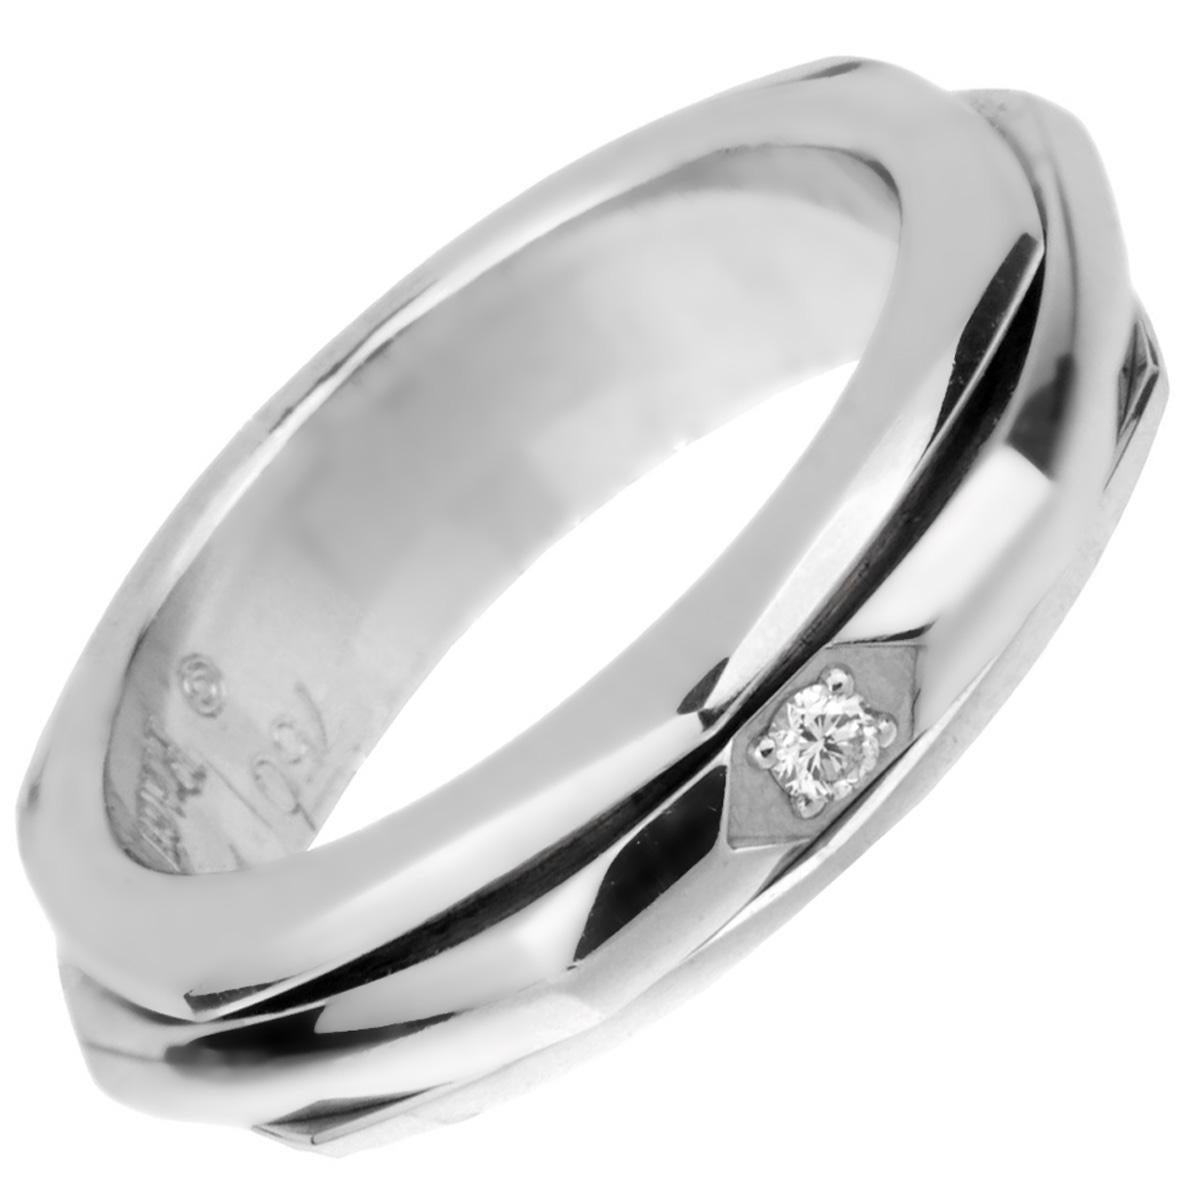 Un bracelet Piaget Possession iconique avec une bande centrale tournante en or blanc 18 carats. L'anneau a une forme hexagonale et est orné d'un diamant rond de taille brillant de 0,02ct. L'anneau mesure une taille de 7

Sku : 1911